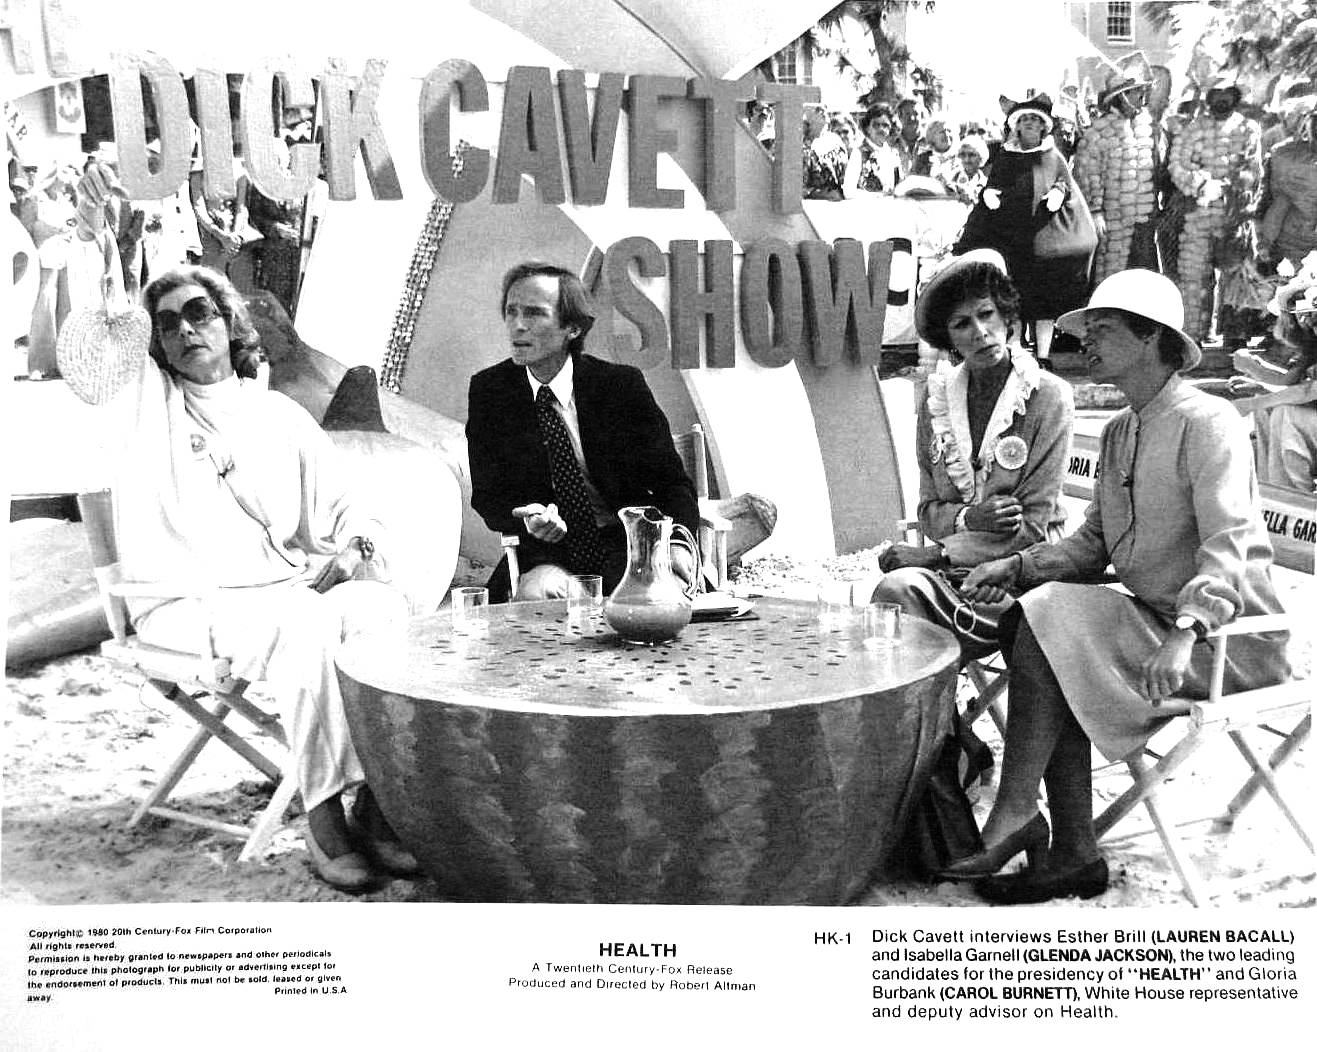 Lauren Bacall, Carol Burnett, Dick Cavett, and Glenda Jackson in HealtH (1980)